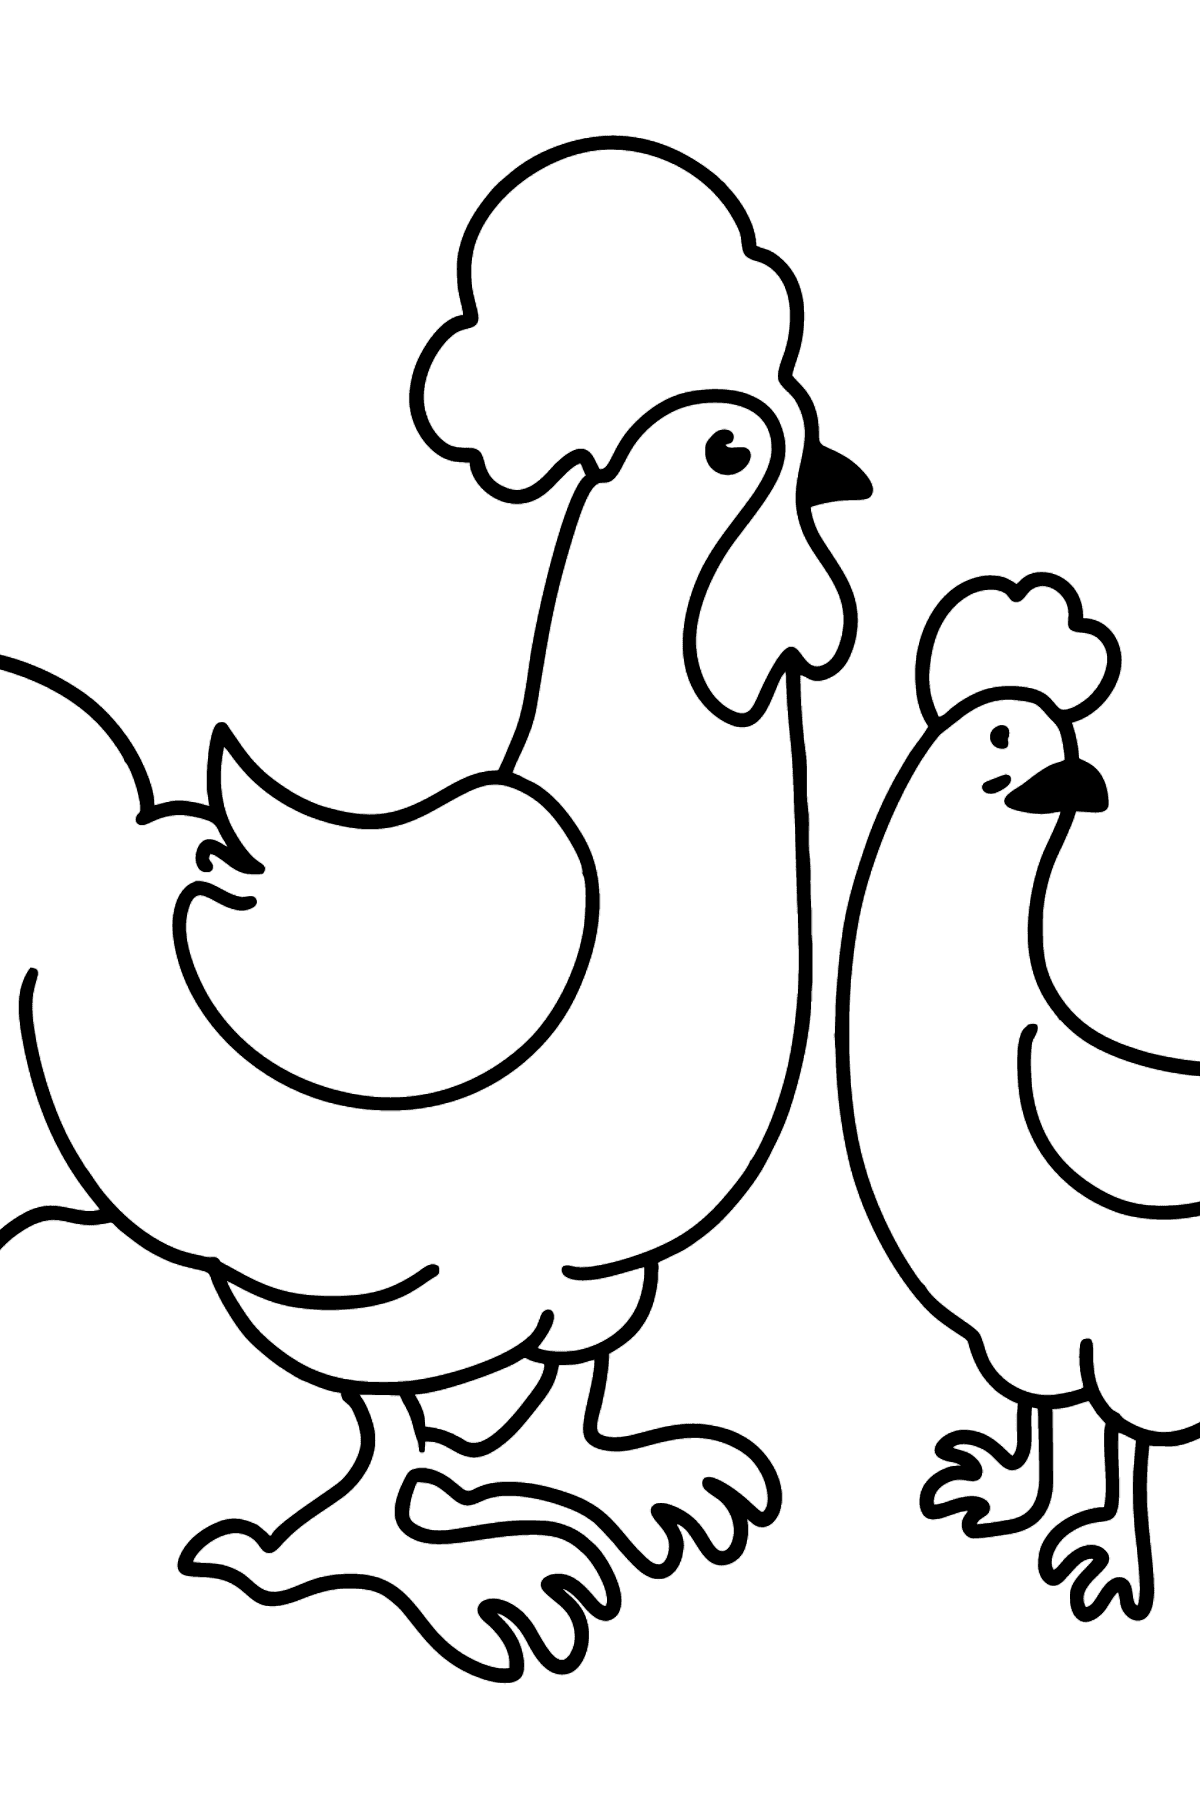 Tegning til fargelegging hane og høne - Tegninger til fargelegging for barn